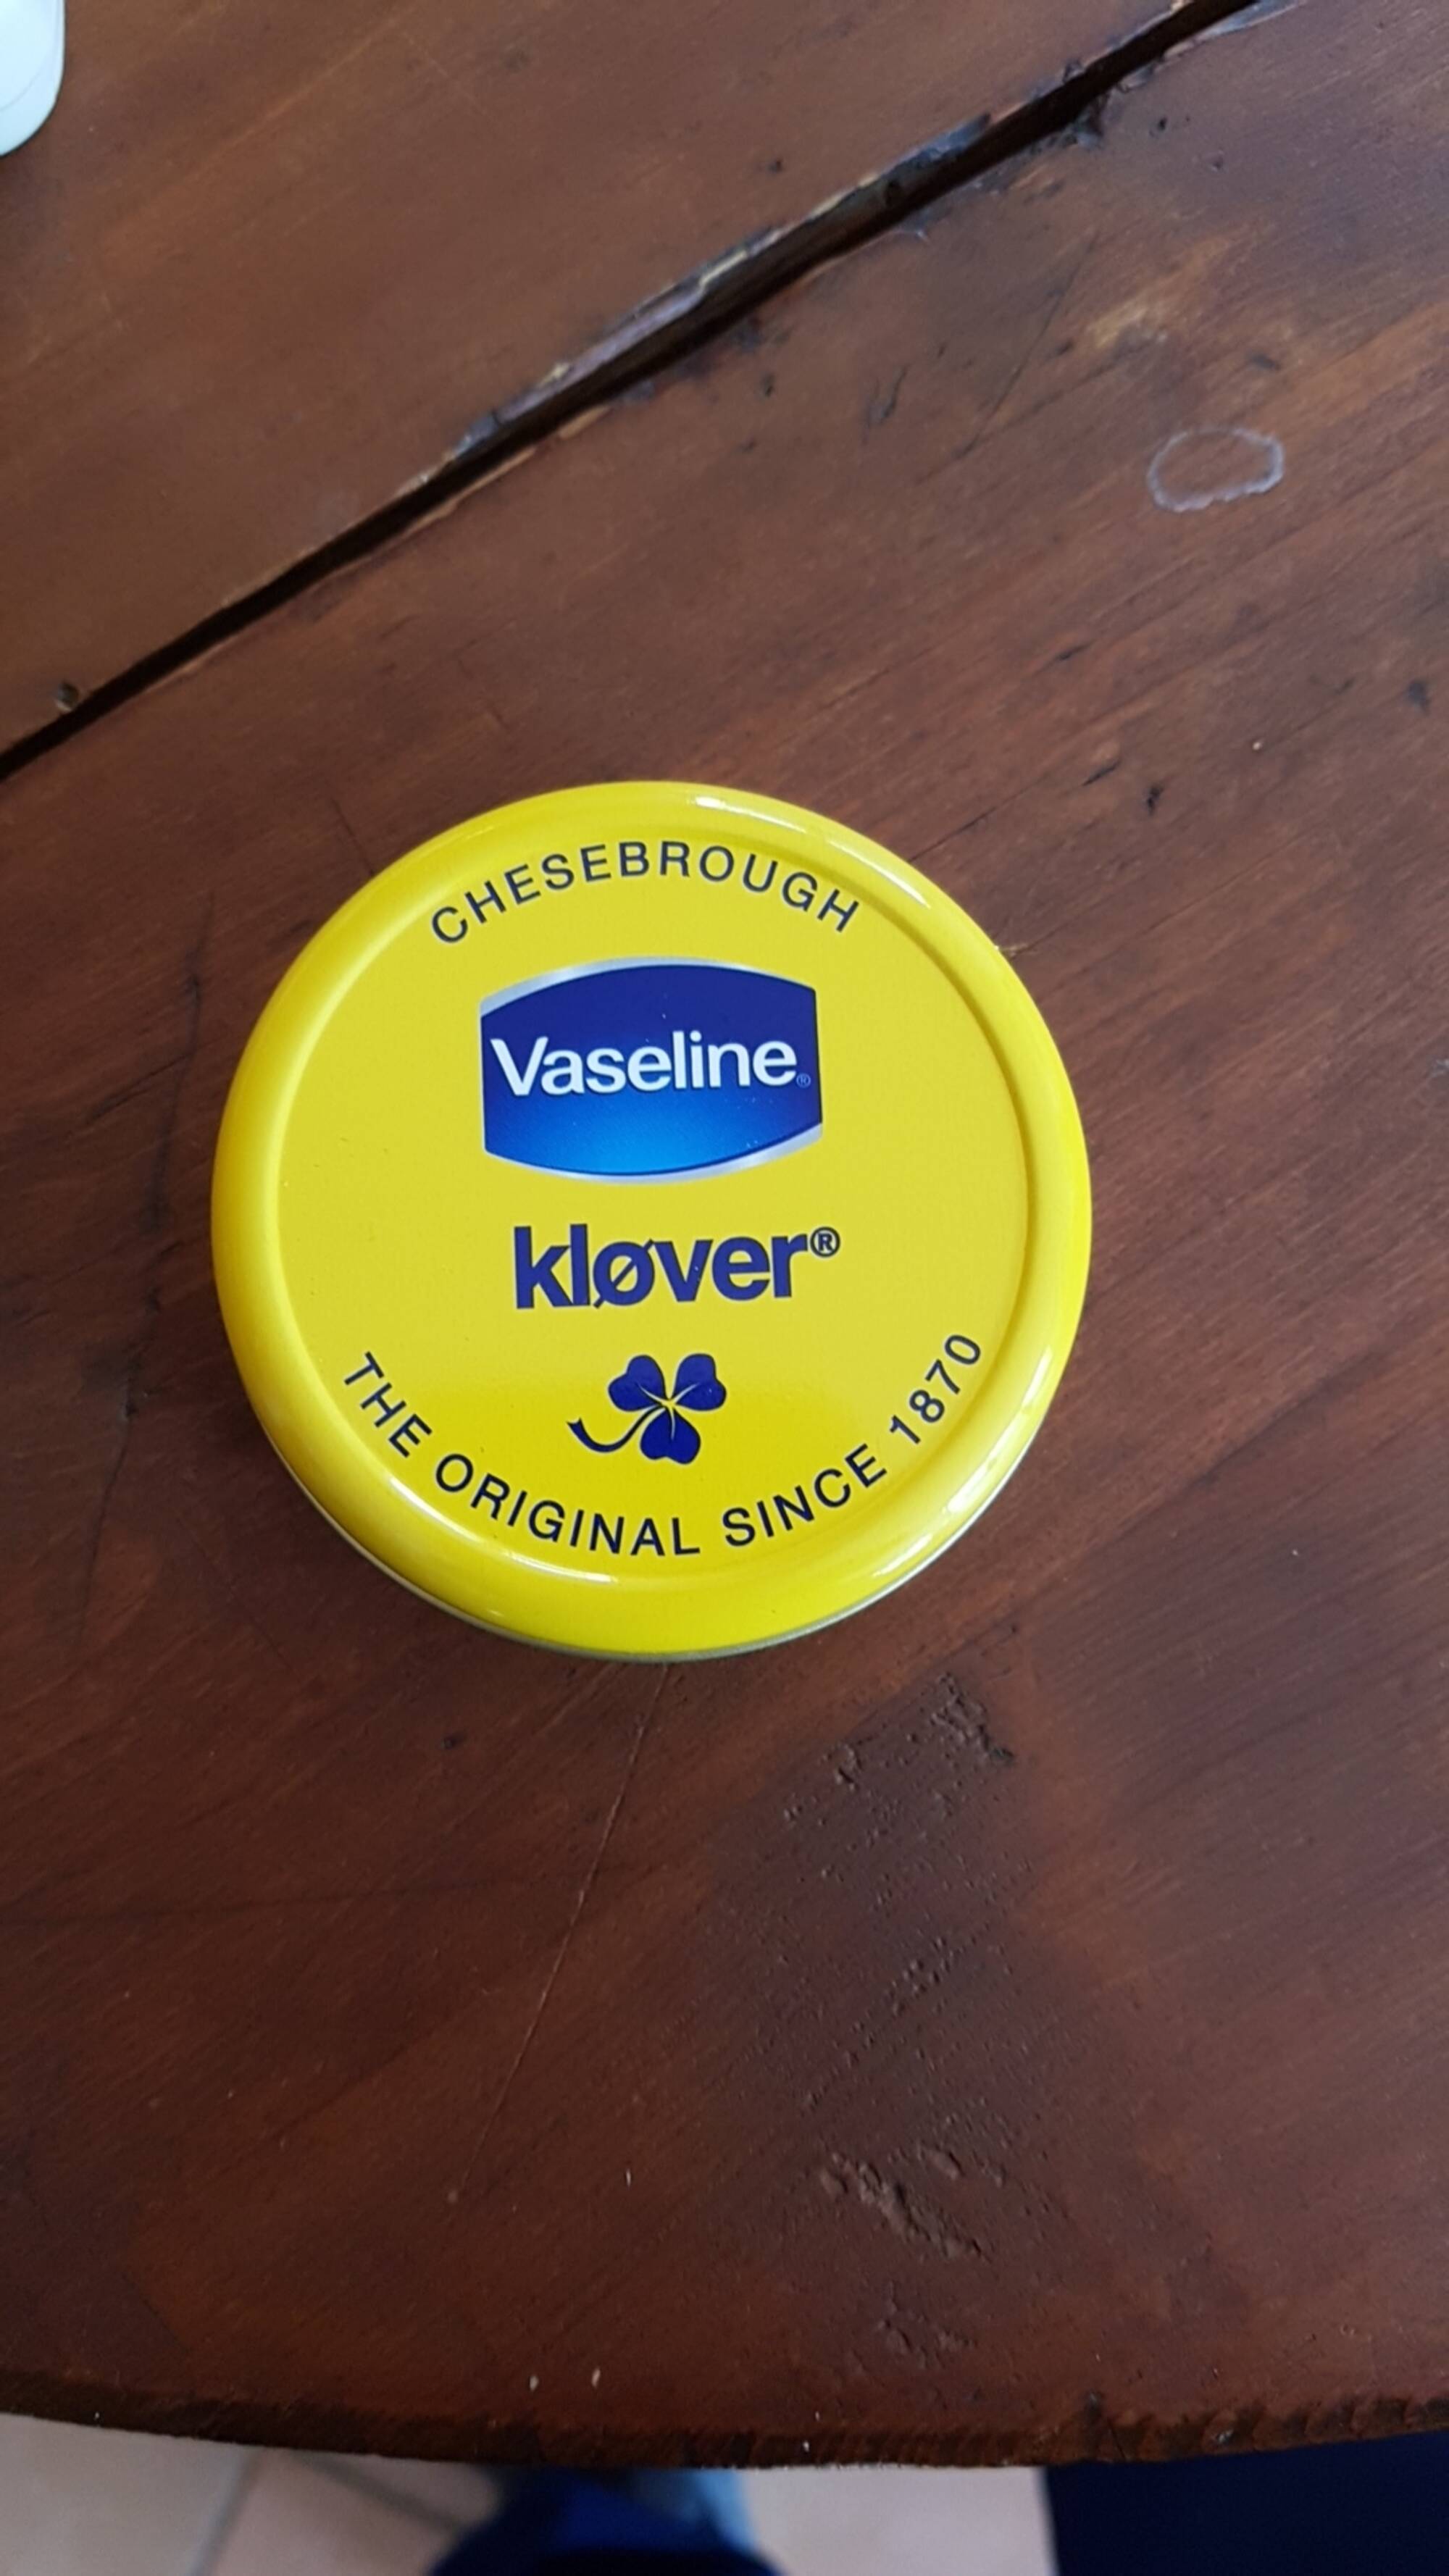 VASELINE - Klover - Chesebrough